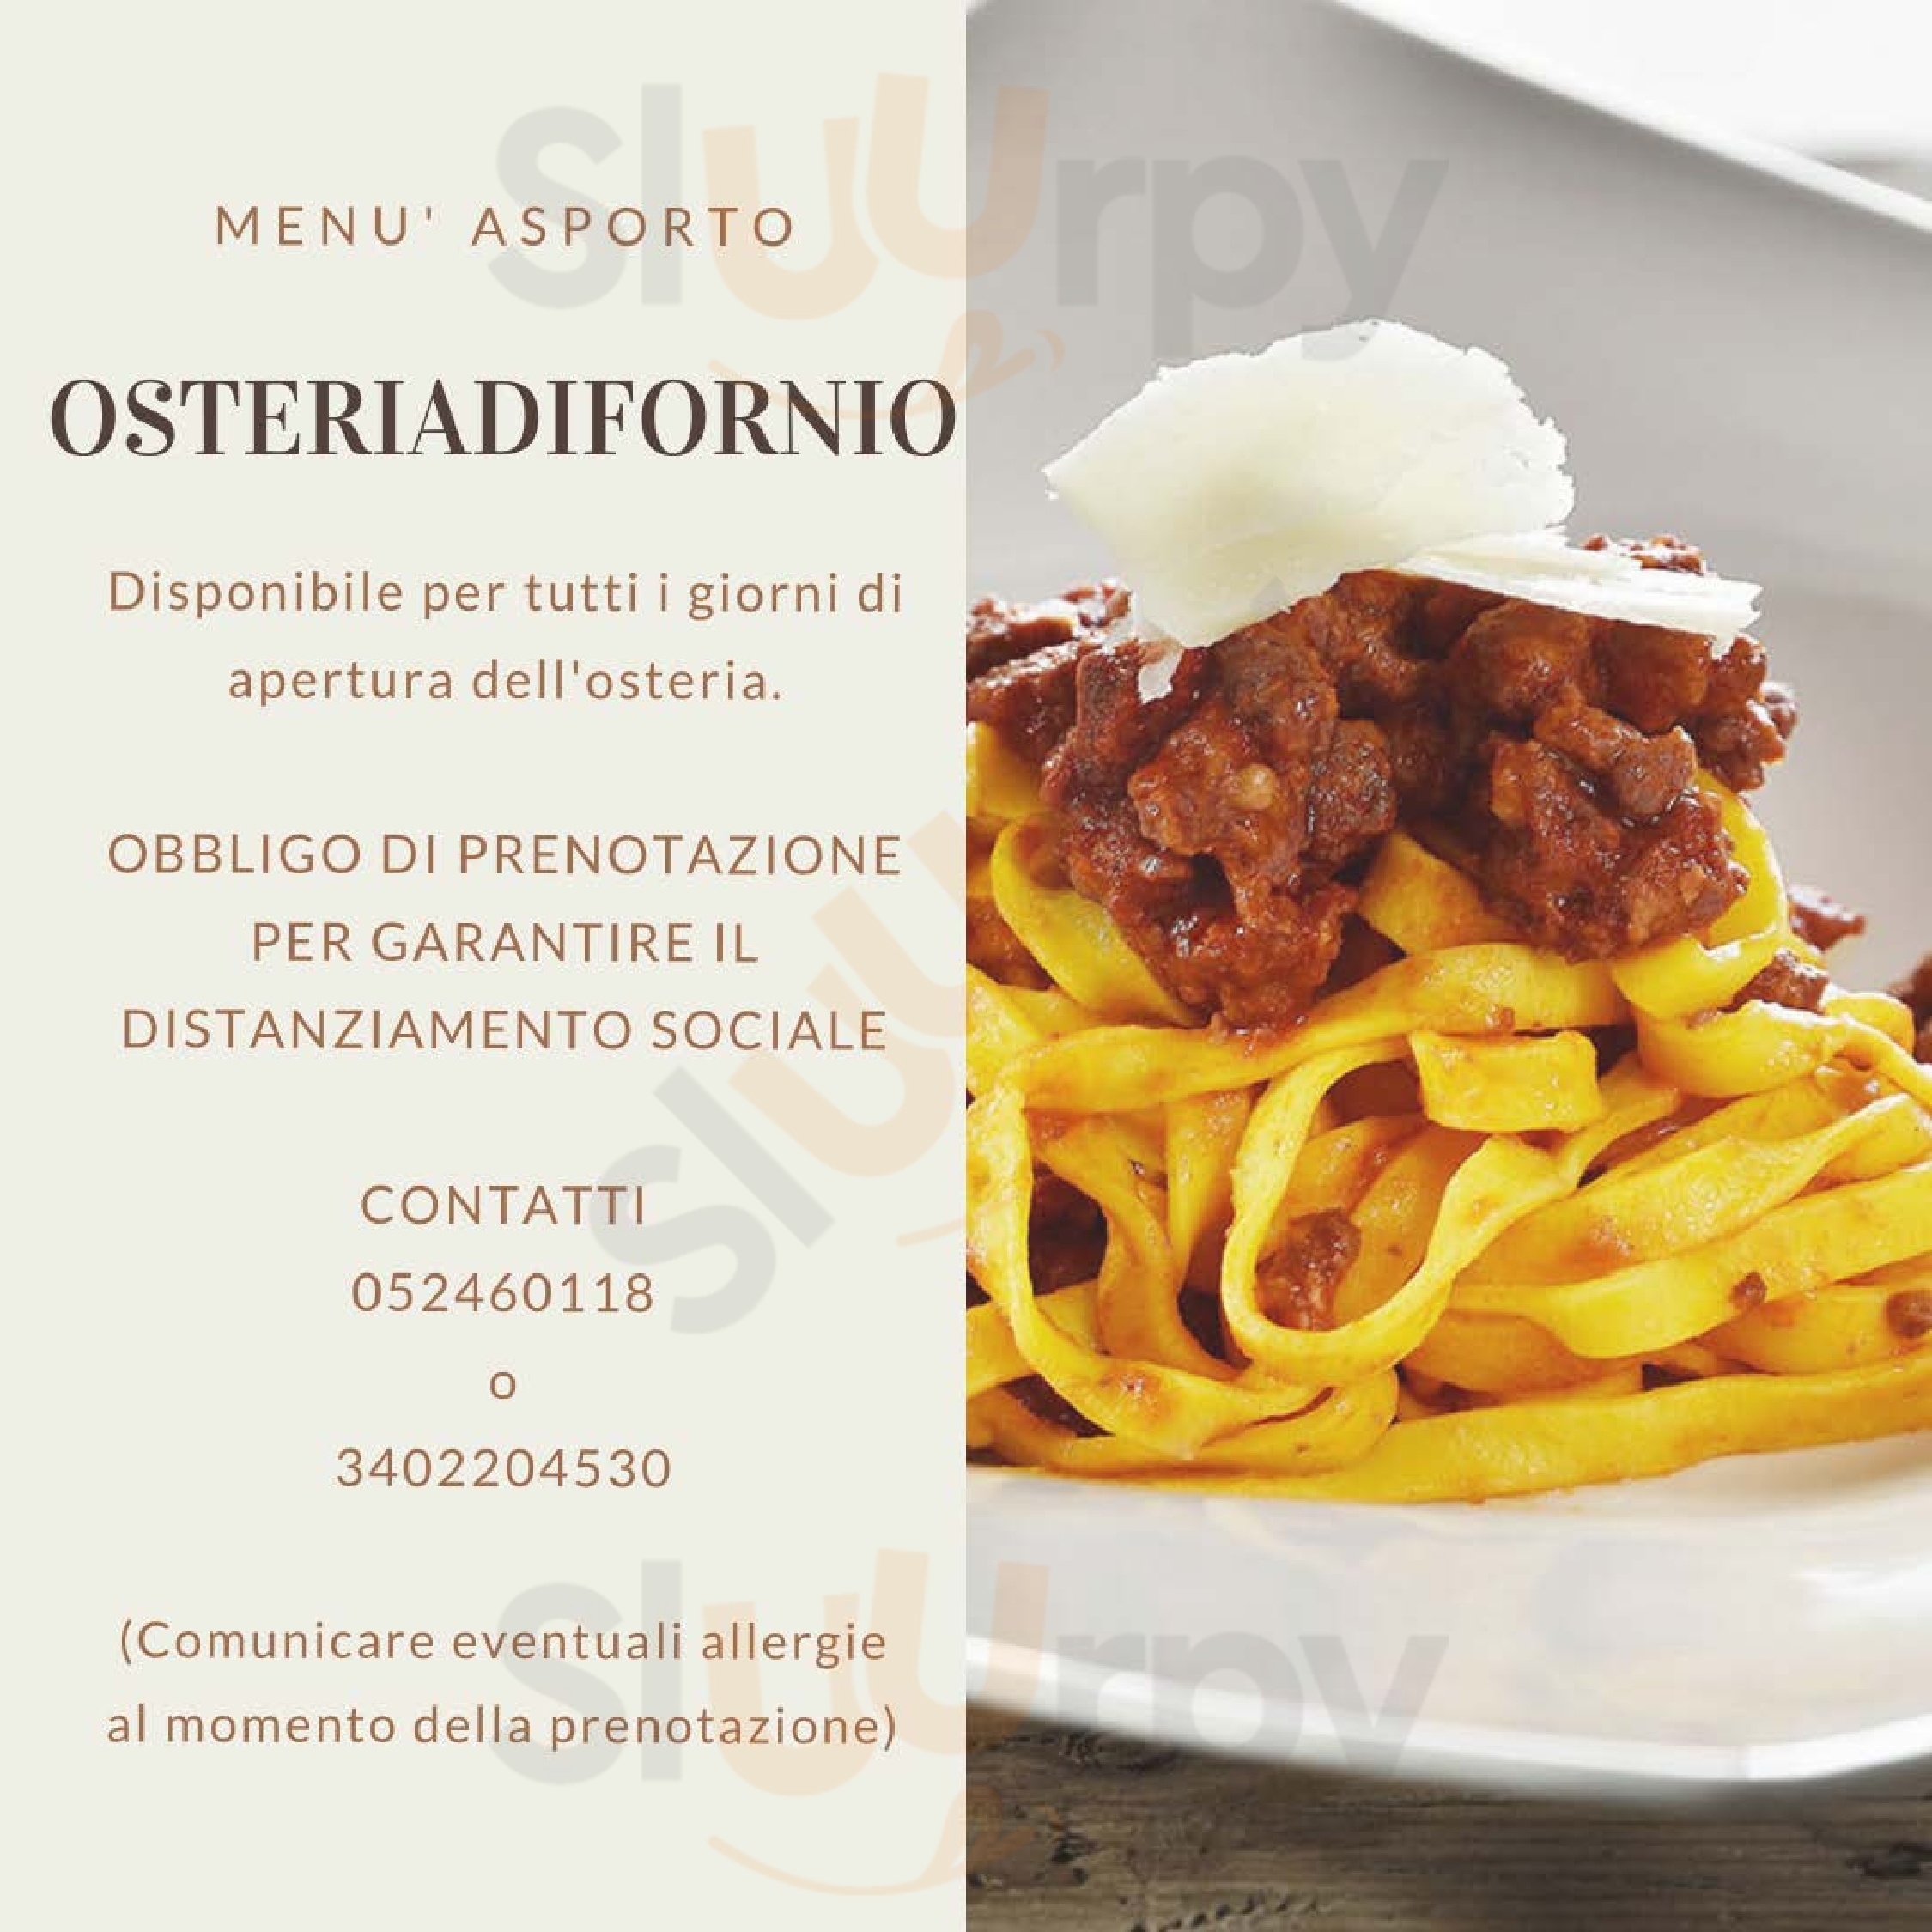 trattoria Osteria di Fornio Fidenza menù 1 pagina